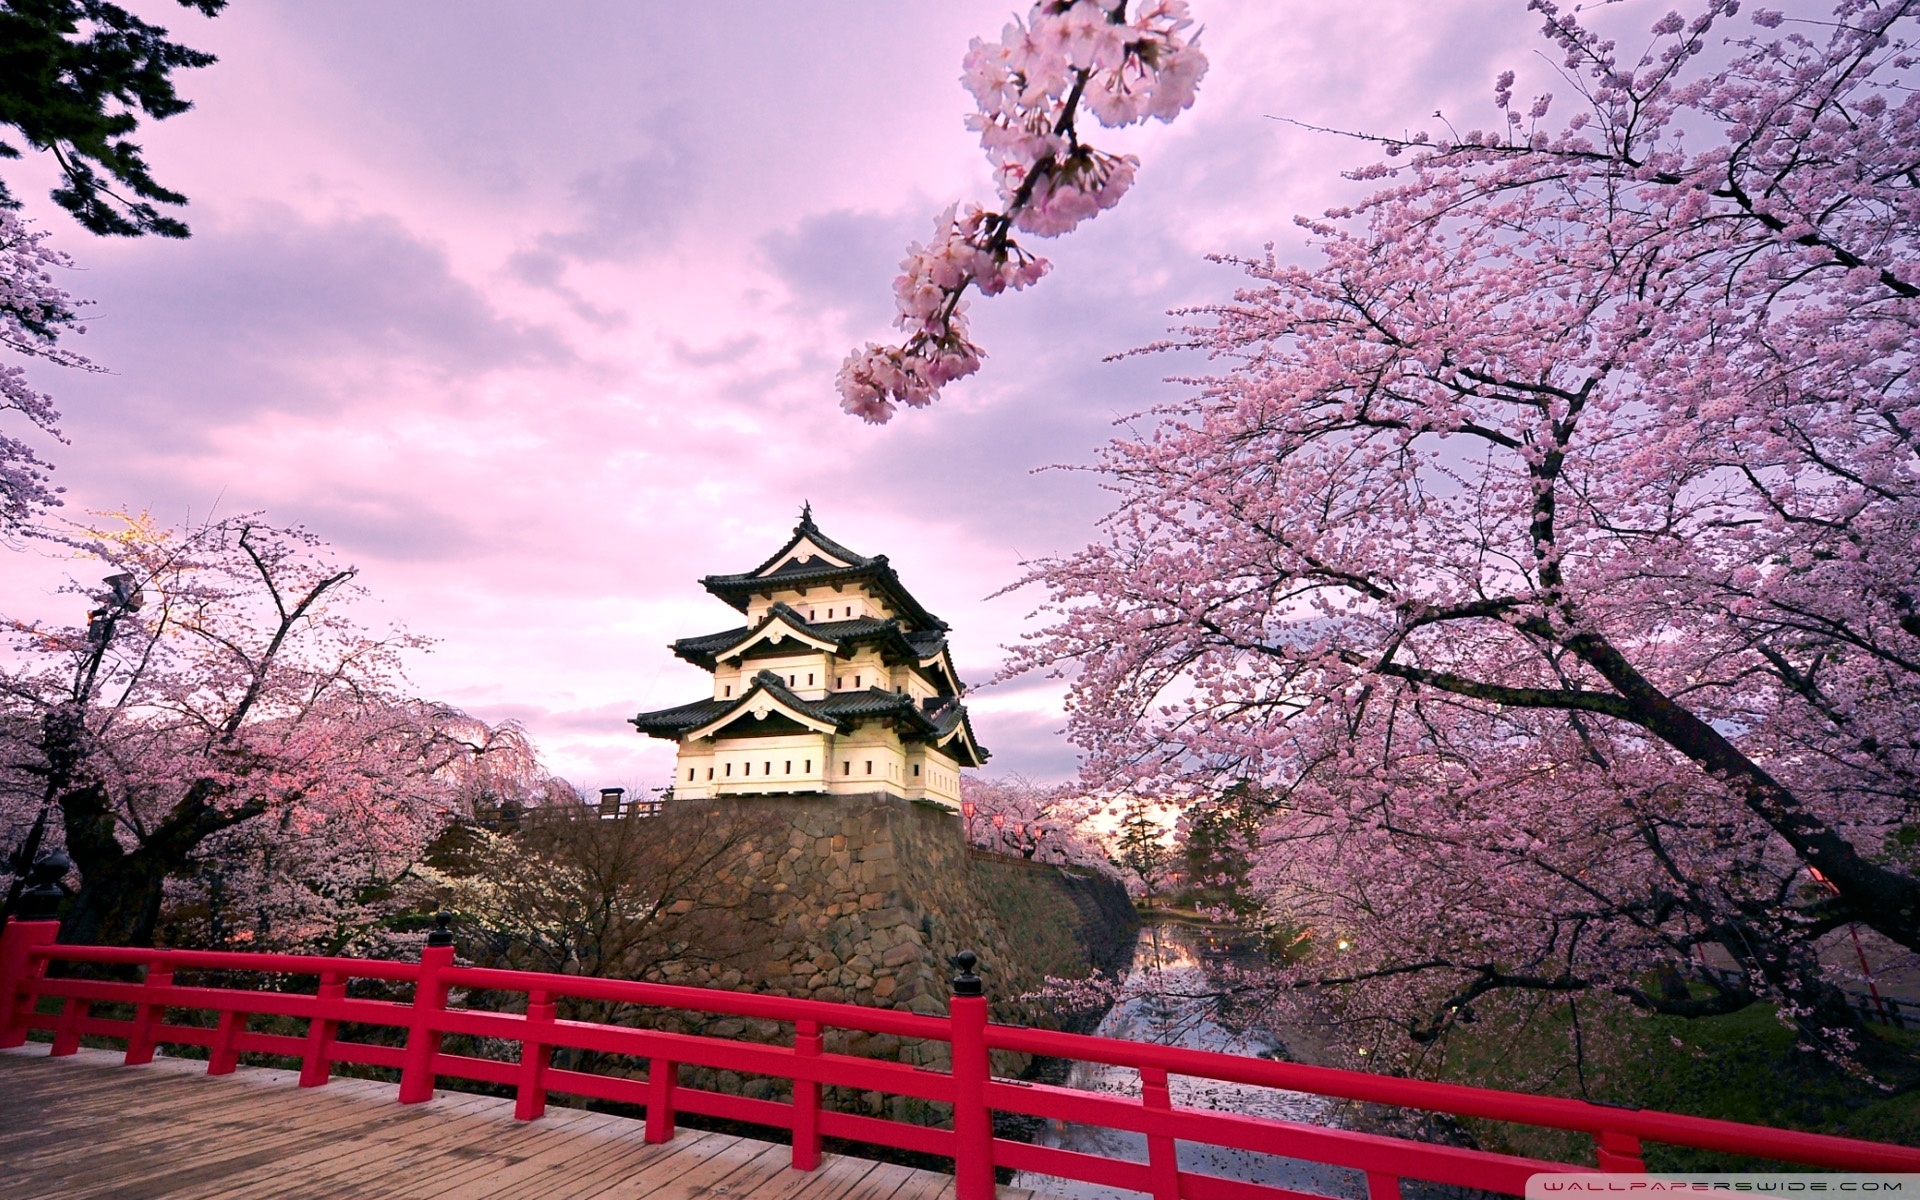 10 Best Japanese Cherry Blossom Wallpaper Hd FULL HD 1920×1080 For PC Desktop